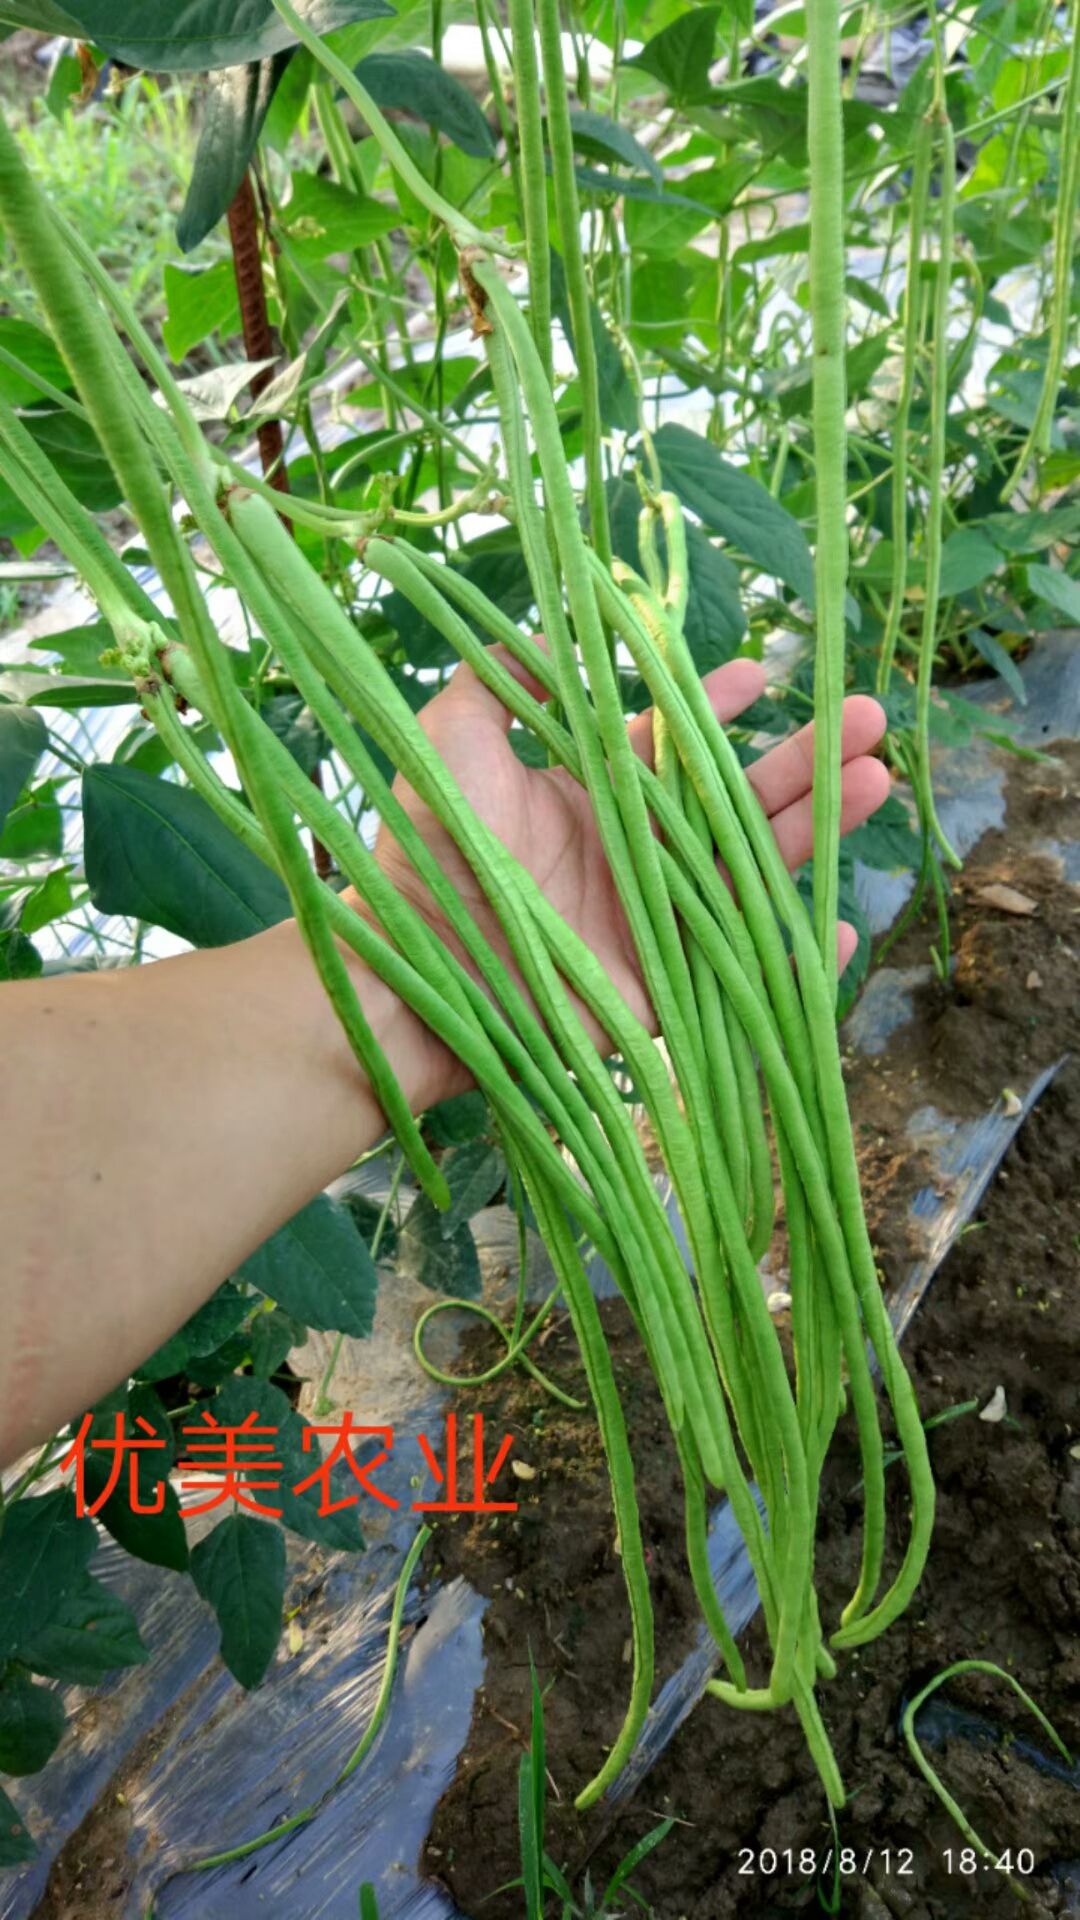 长青豆角种子 油绿长豇豆,产量高,颜色漂亮.